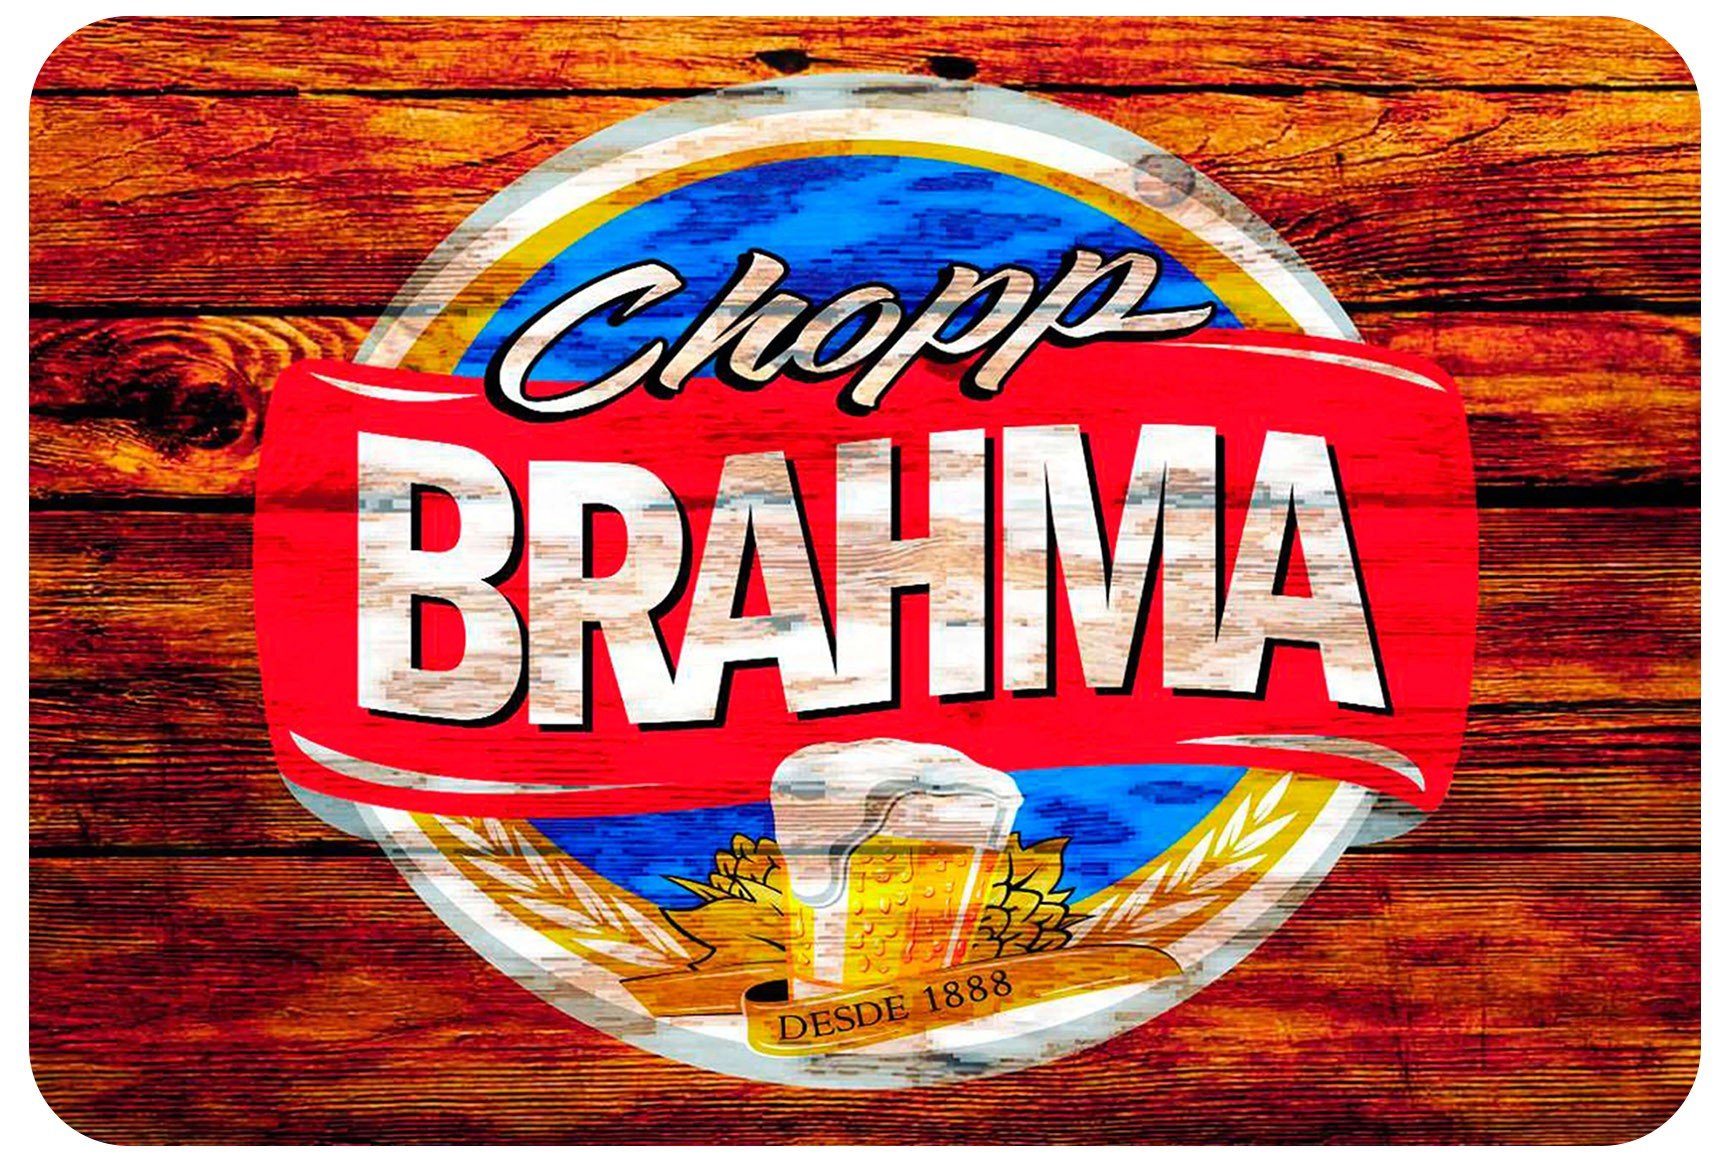 Camarote Bar Brahma | Facebook